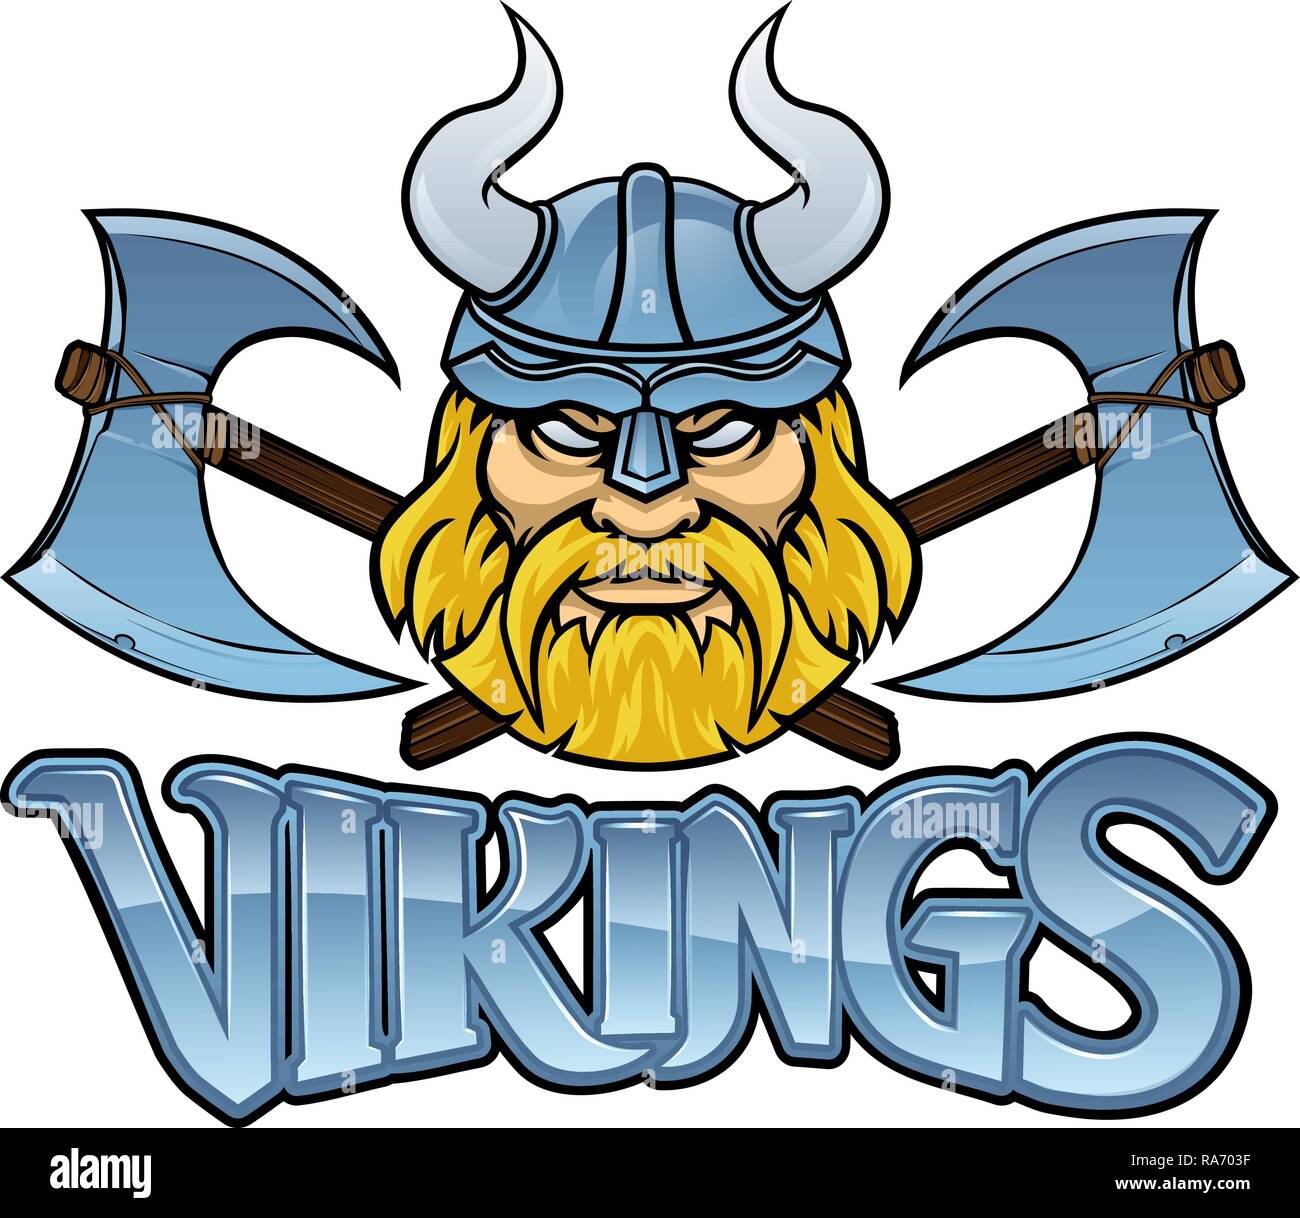 Guerrier Viking Mascot traversé Axs Sign Graphic Illustration de Vecteur